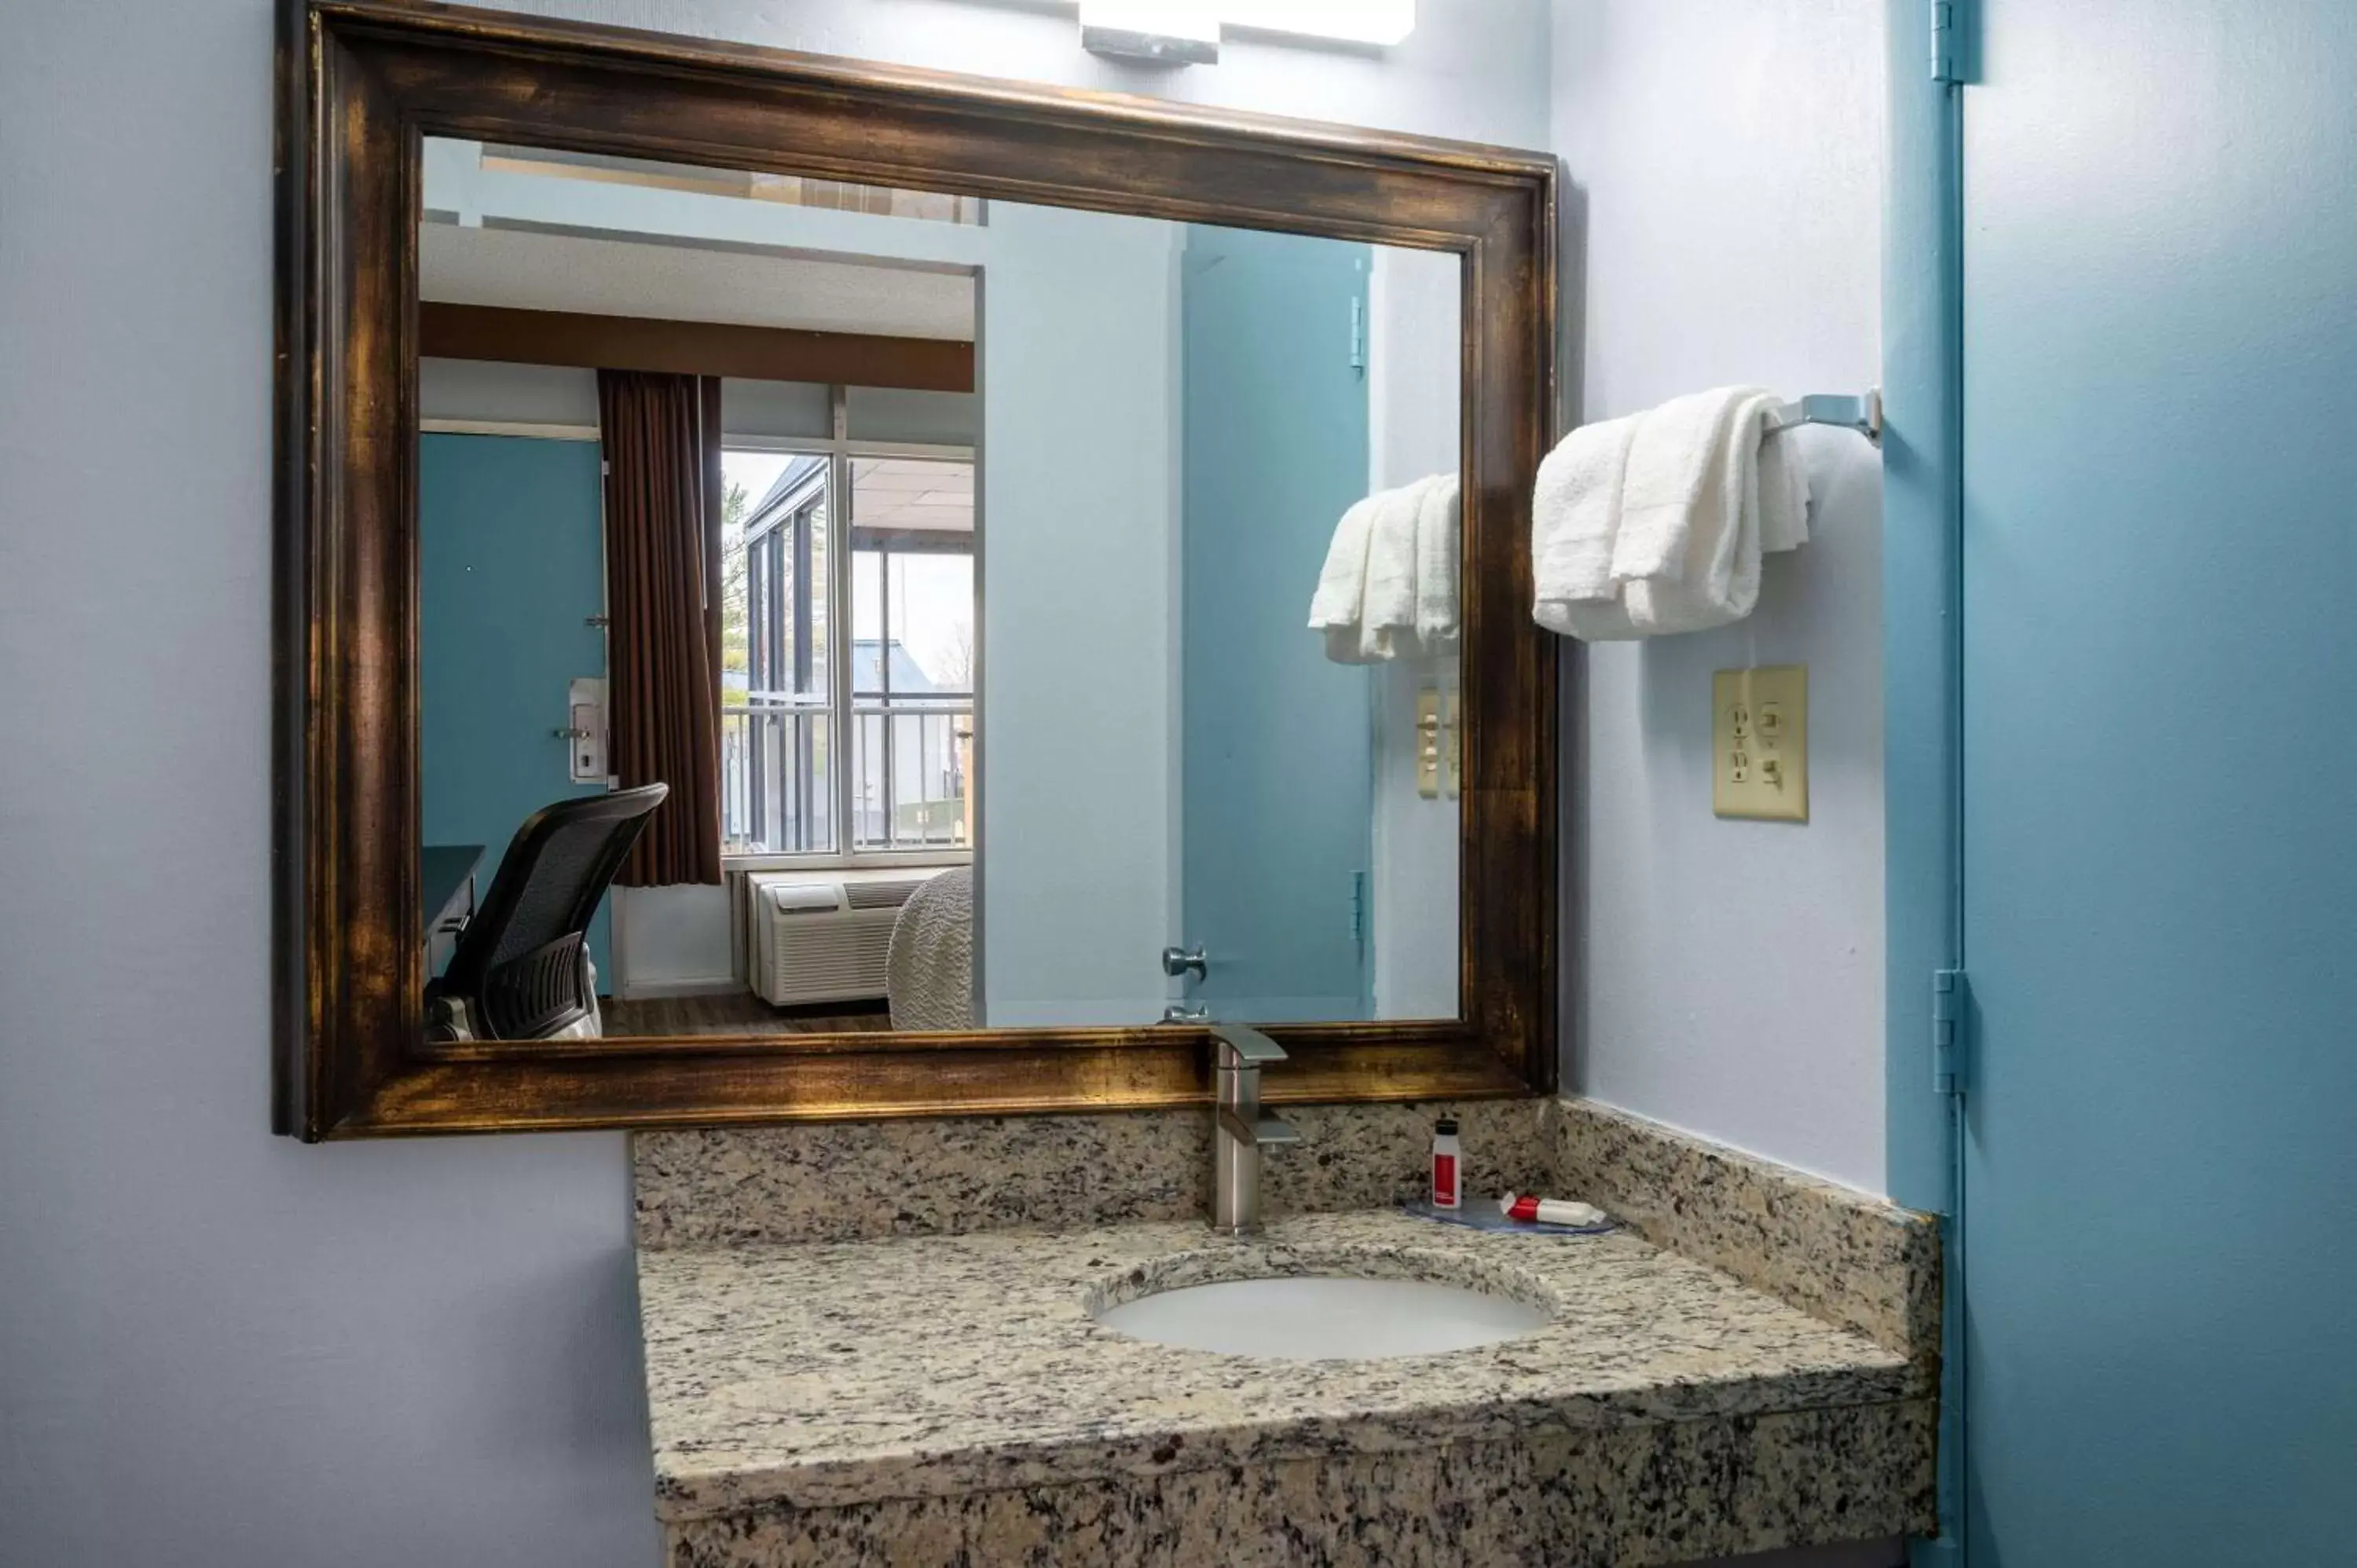 Bathroom in Days Inn by Wyndham Perrysburg Toledo